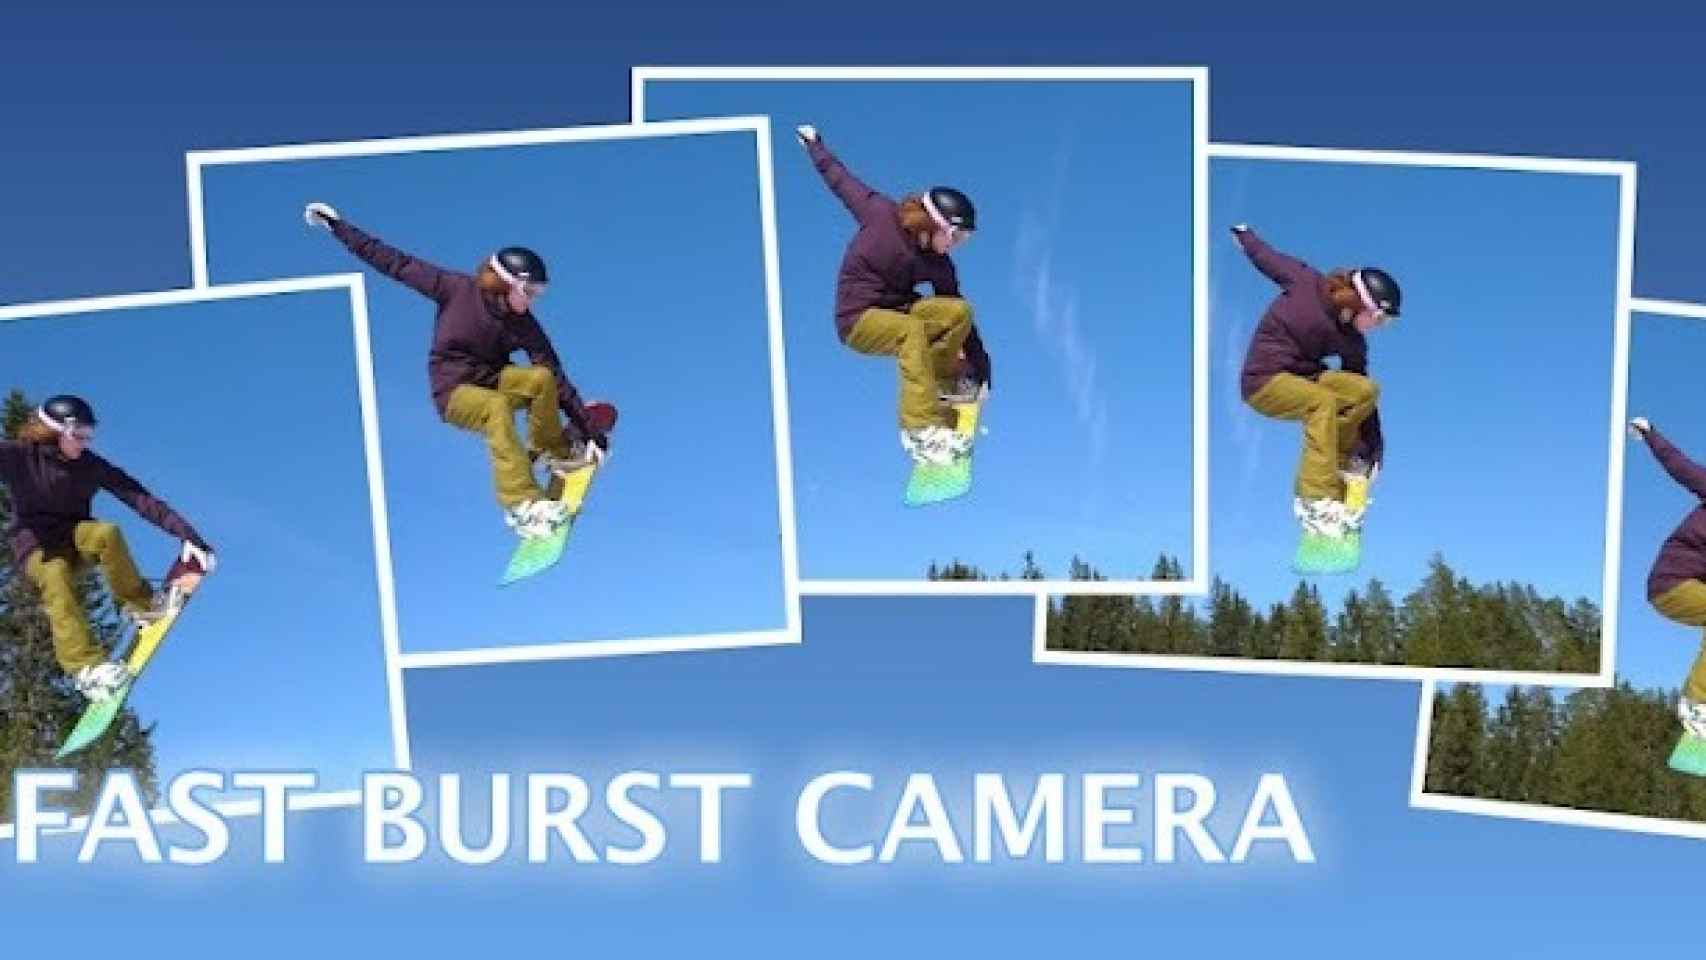 Toma ráfagas de fotos con cualquier Android gracias a Fast Burst Camera